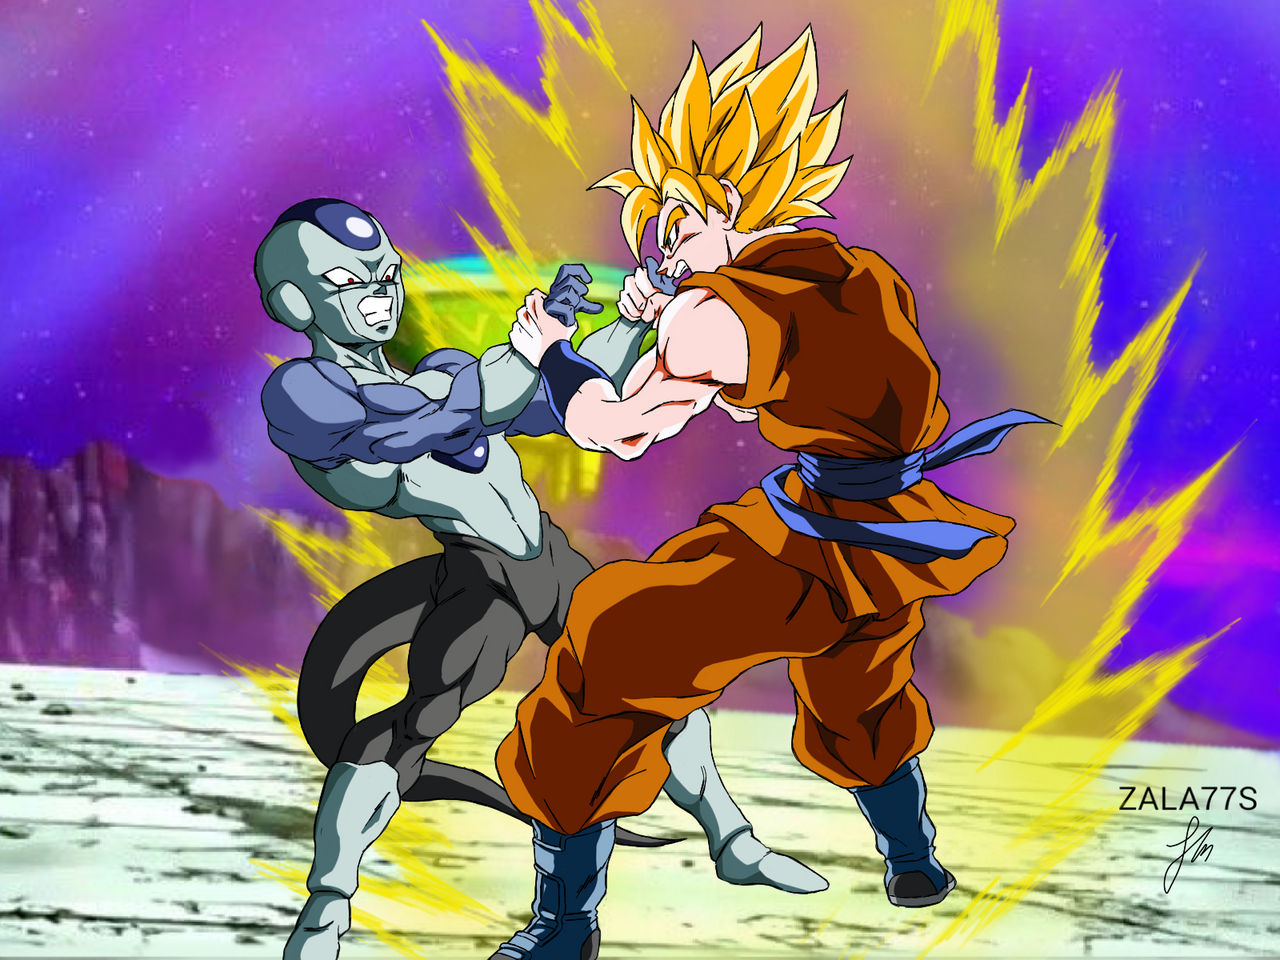 Goku vs Frost !! (Torneo de Champa) by zala77s on DeviantArt